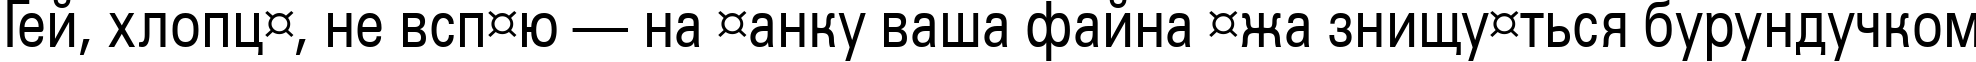 Пример написания шрифтом a_GroticNr текста на украинском